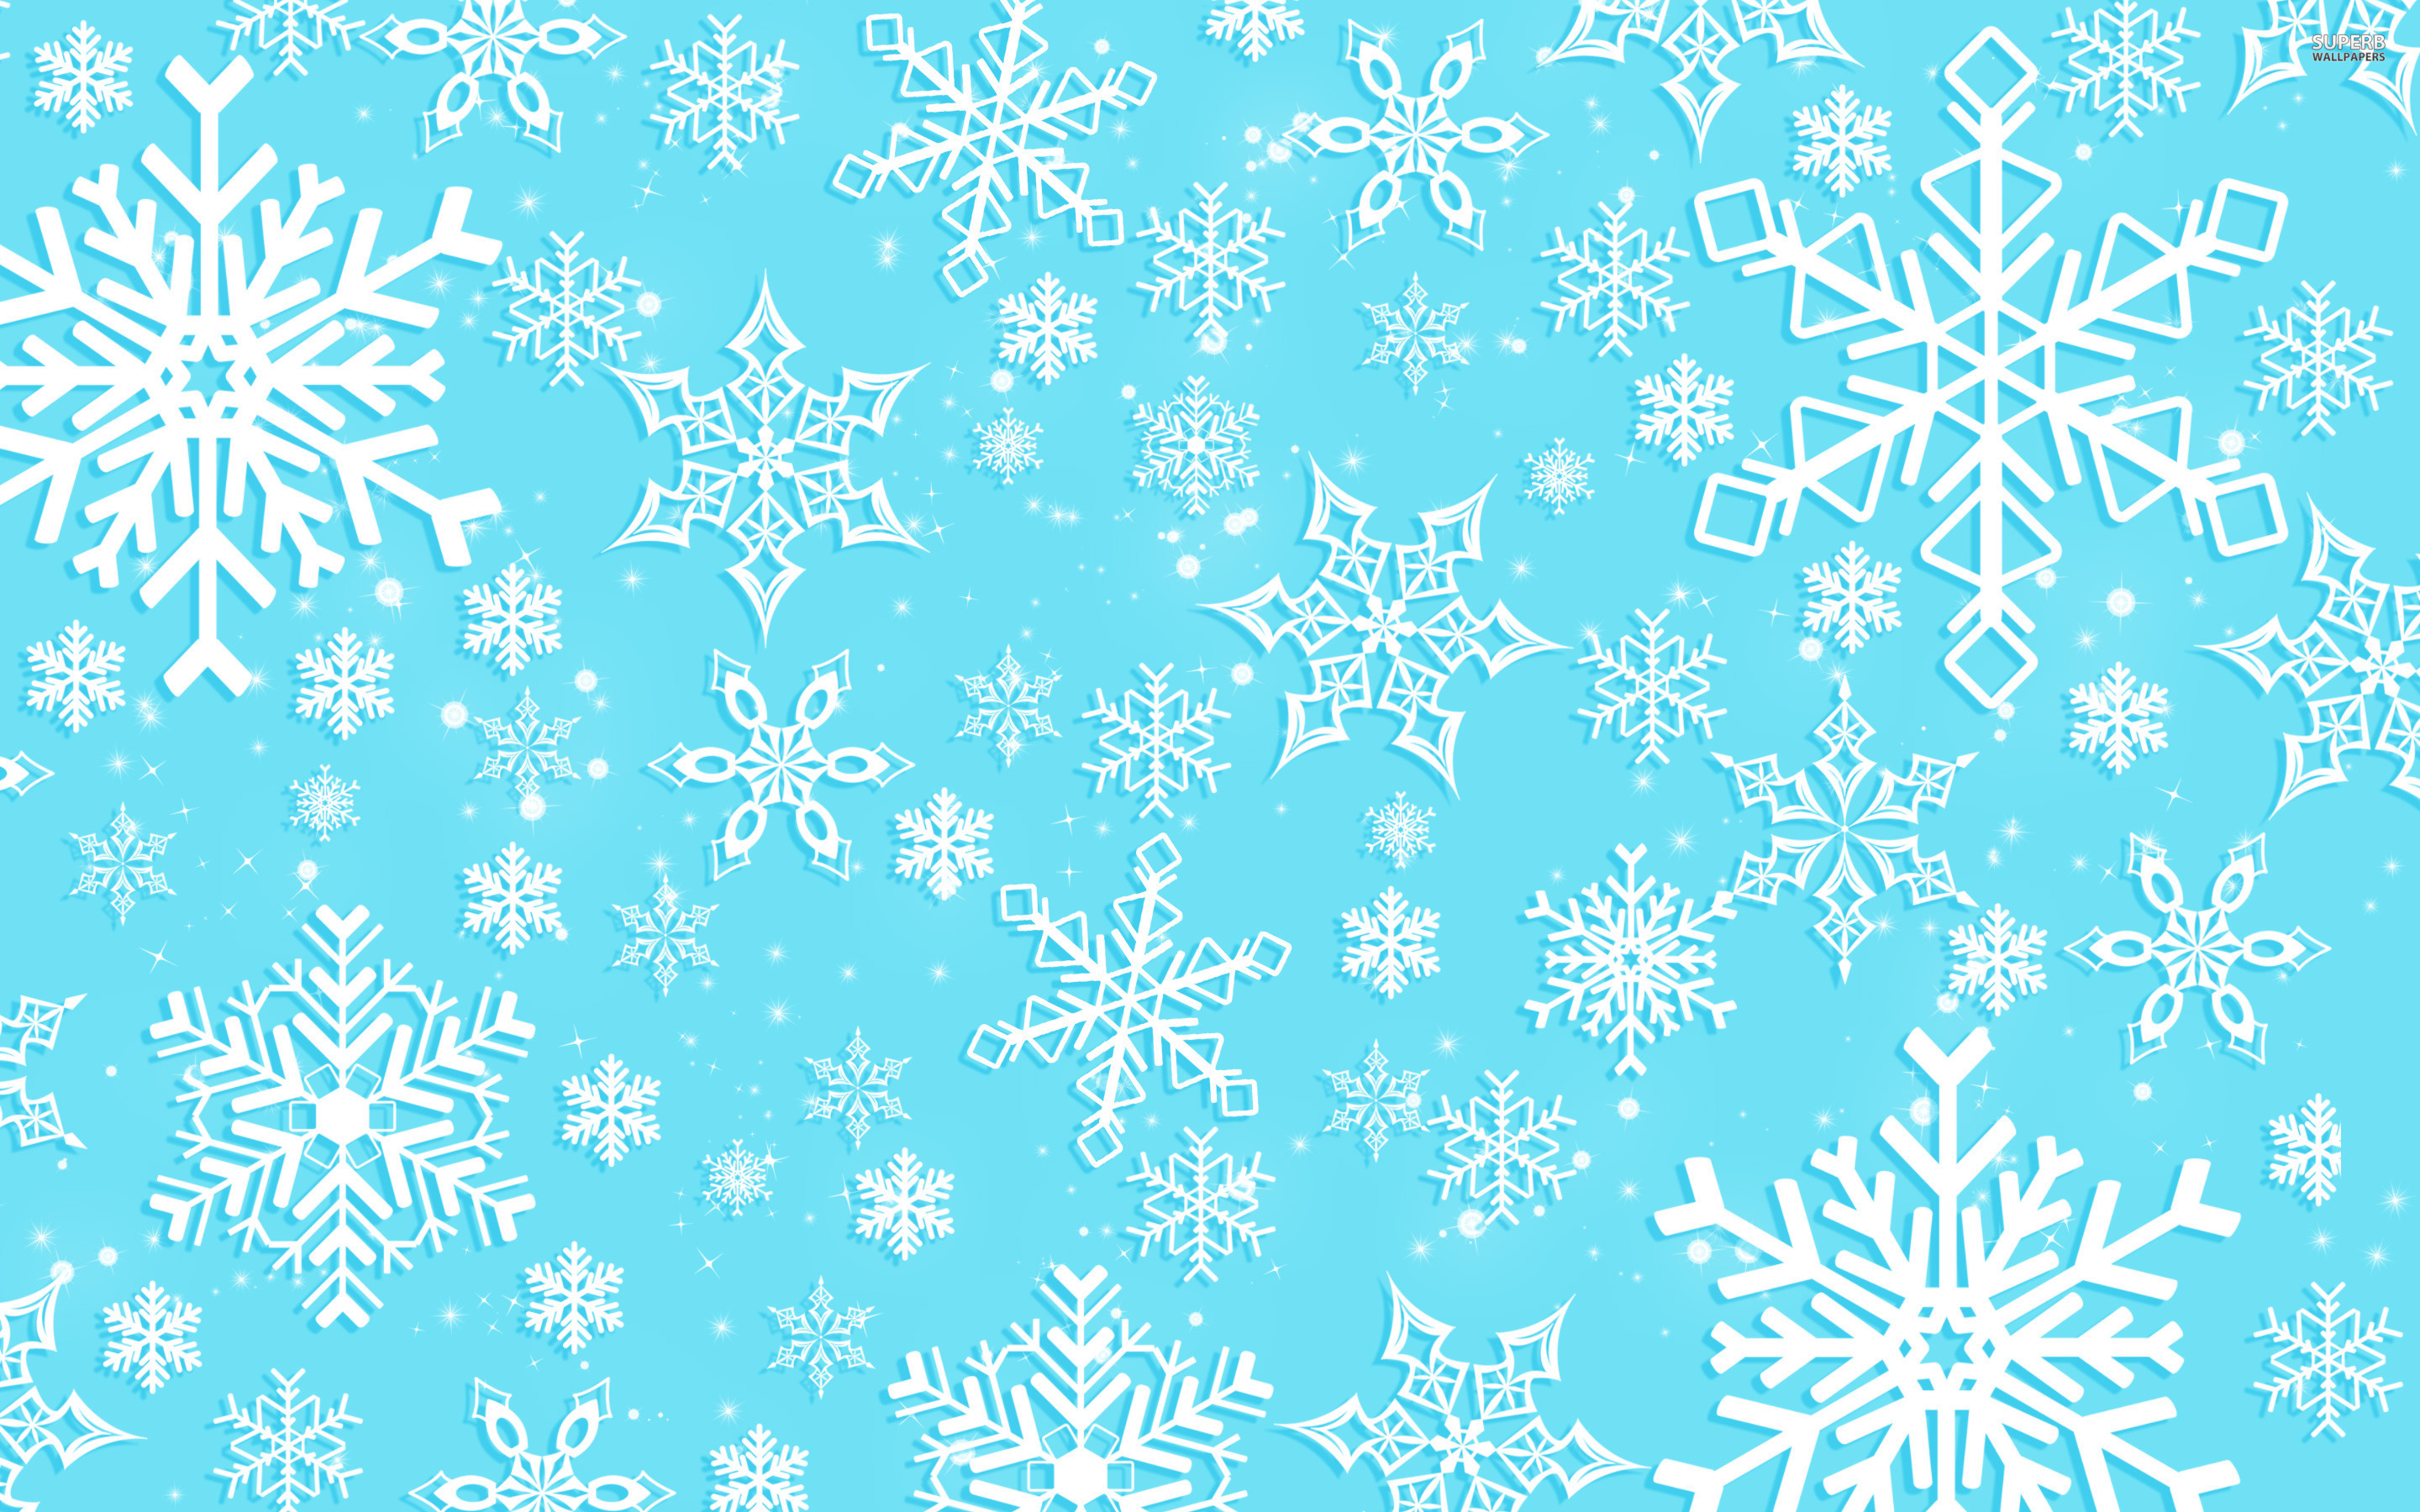 Snowflake Wallpaper Images - Uncalke.com